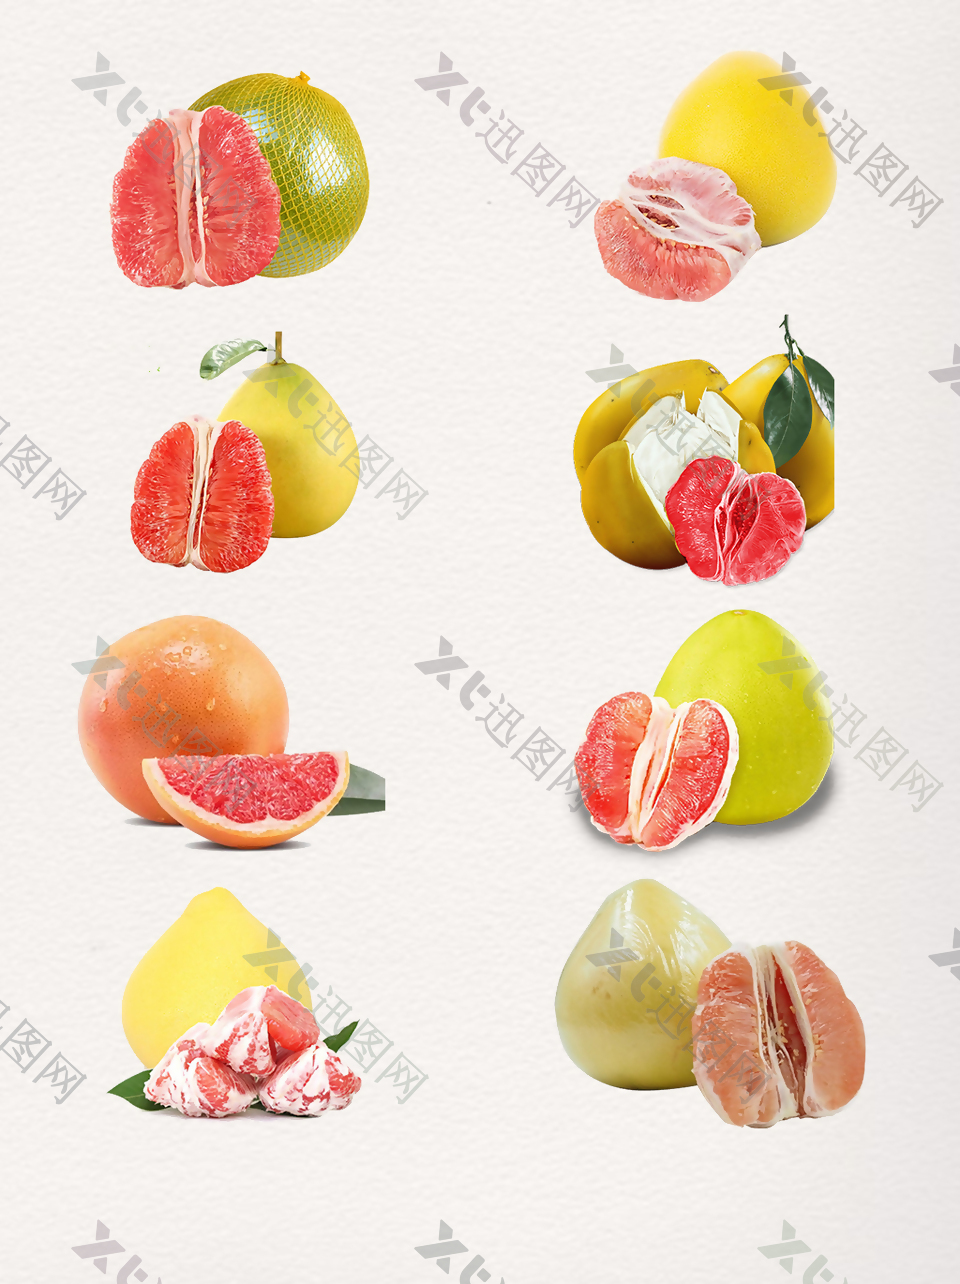 一组剥开的柚子图案